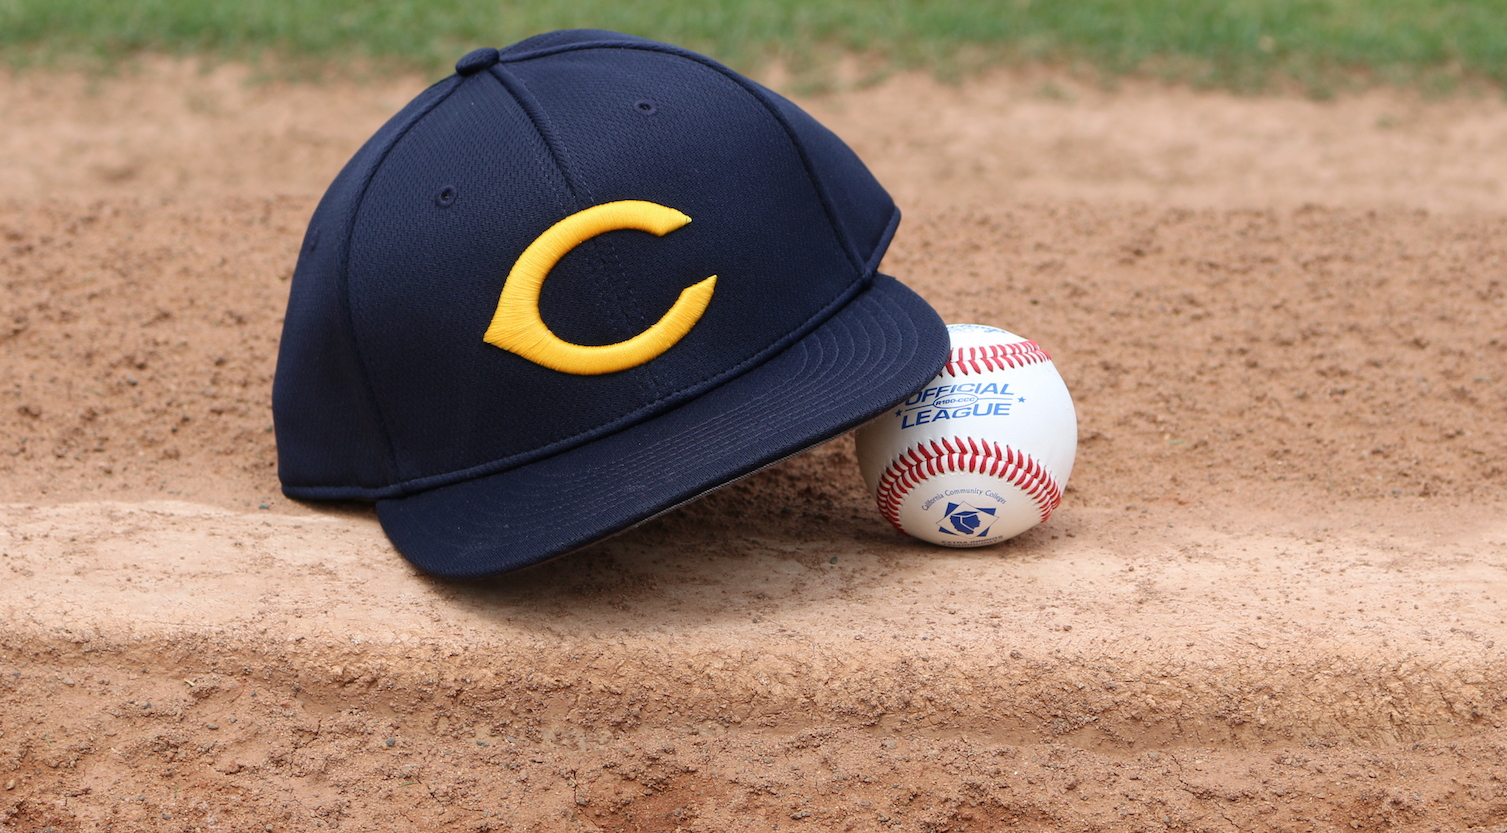 COC baseball hat and ball image.